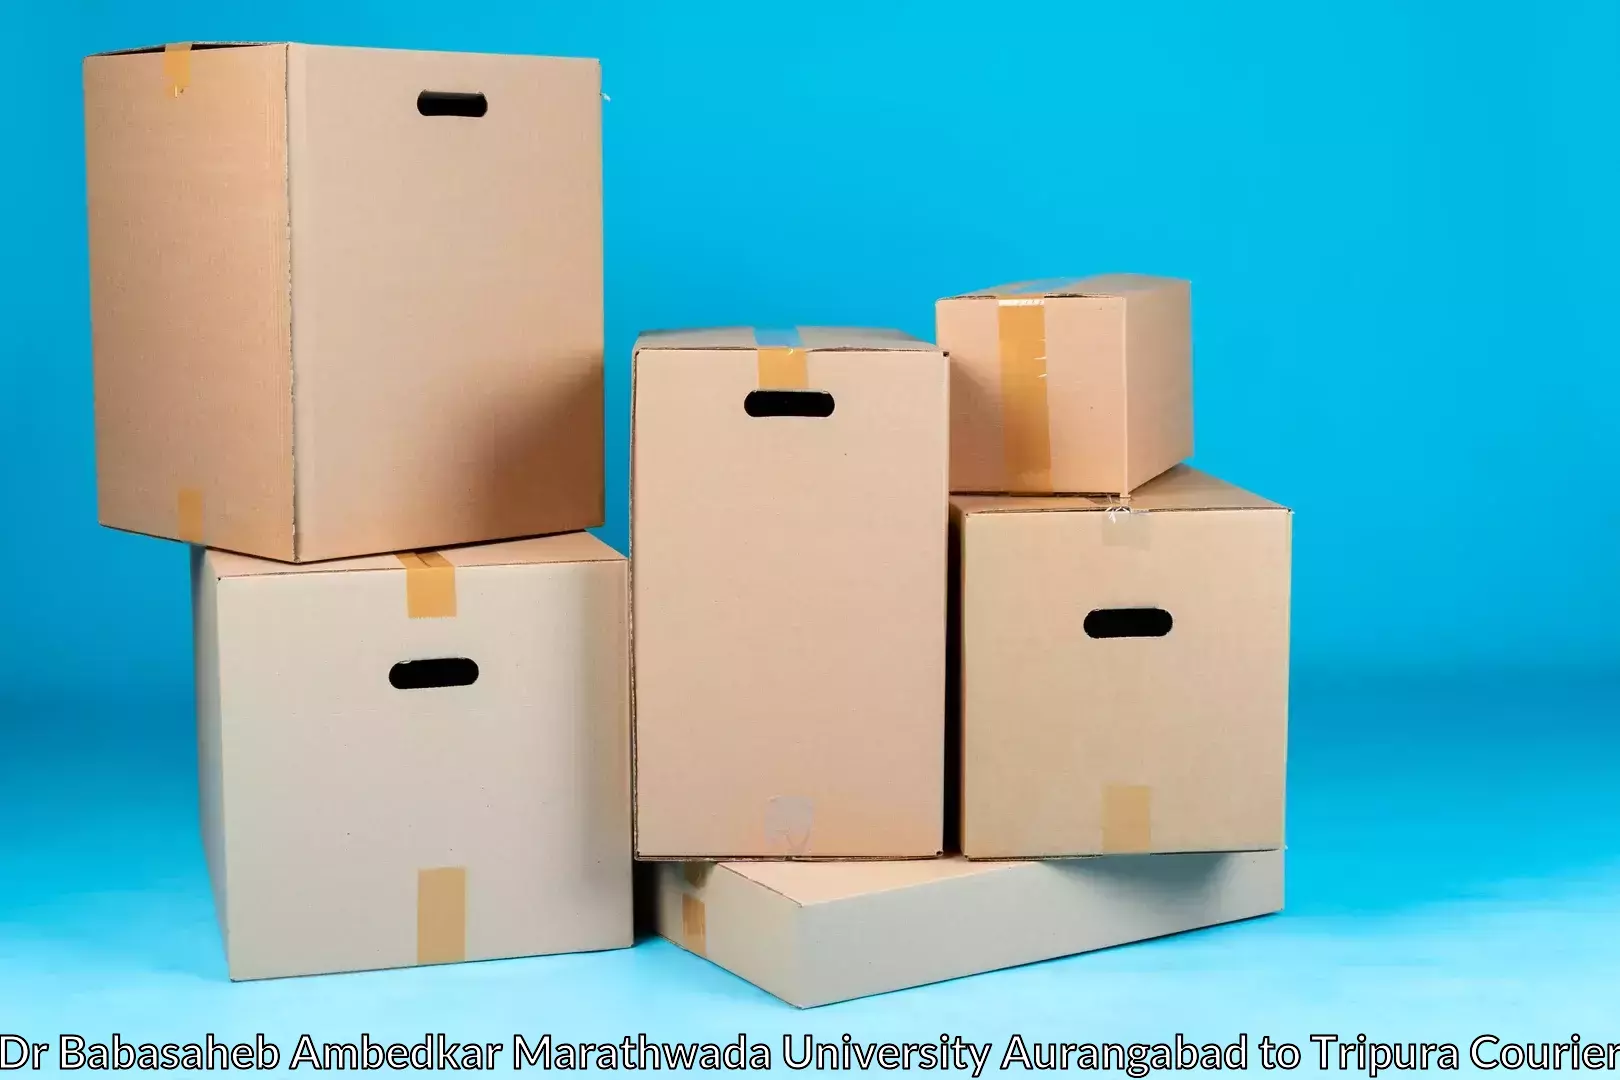 Efficient furniture shifting Dr Babasaheb Ambedkar Marathwada University Aurangabad to Ambassa